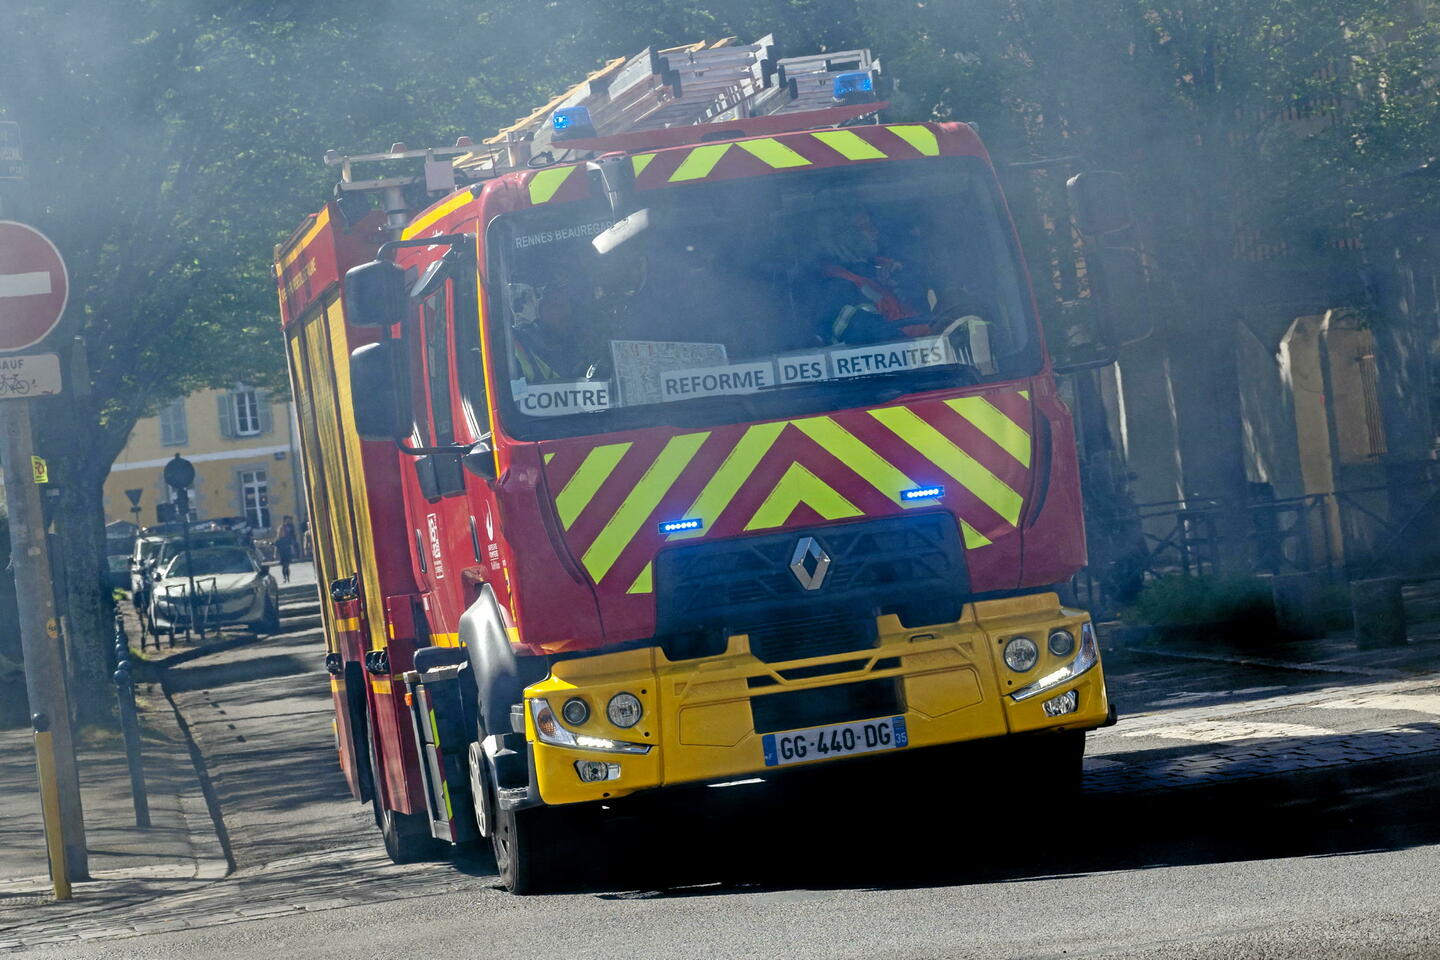 Un camion, utilisé pour lutter contre les feux de forêts, volé en Lozère